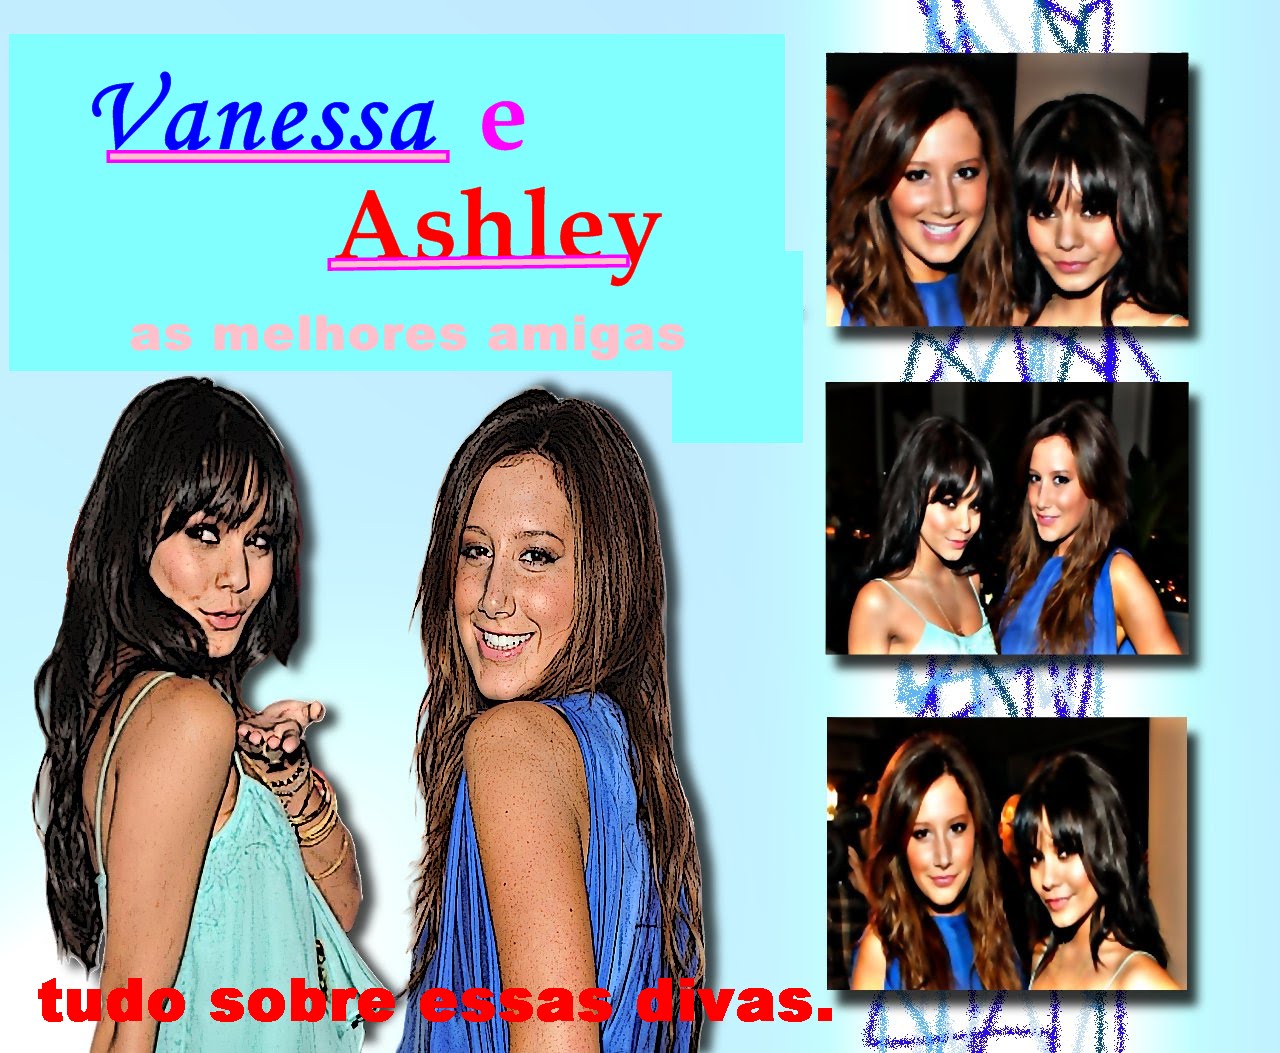 Vanessa e Ashley Melhores Amigas "TUDO SOBRE ESSAS DIVAS" sua melhor e fonte de ashley e vanessa.